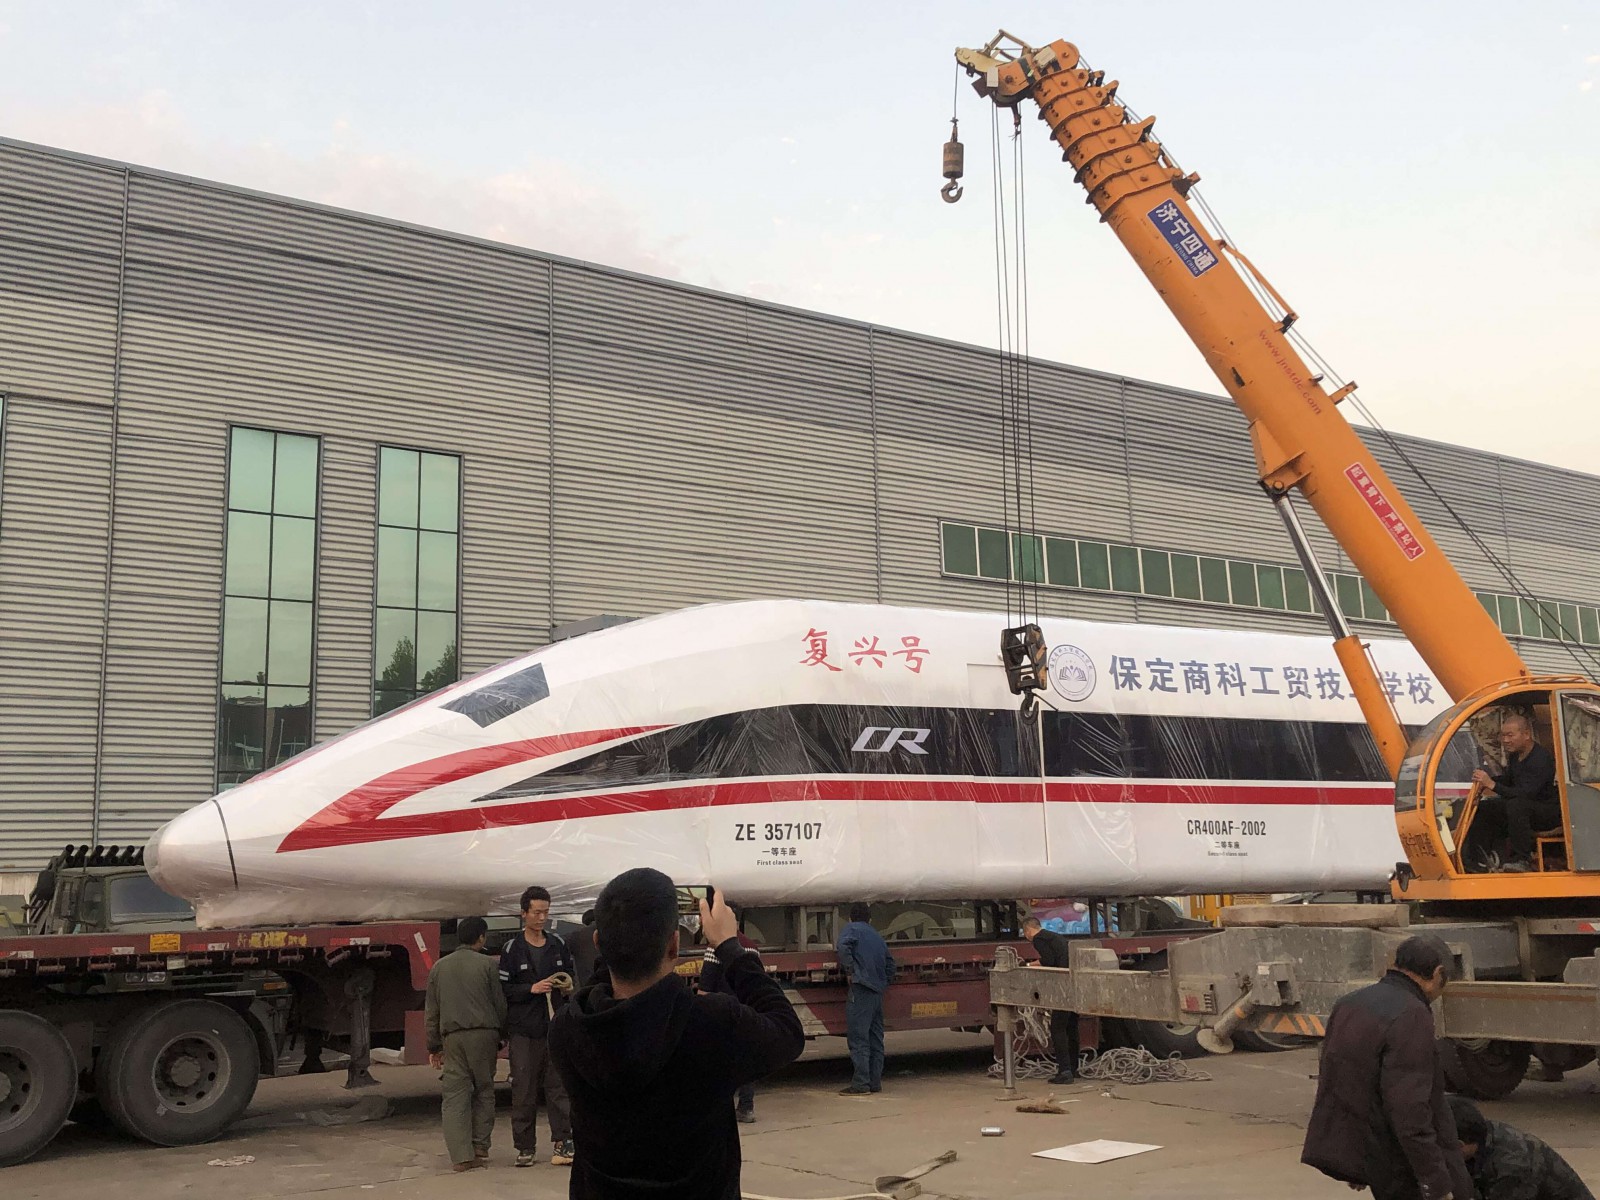 一比一b737飞机模型厂家,高铁一比一模型厂家,新疆龙之梦模型